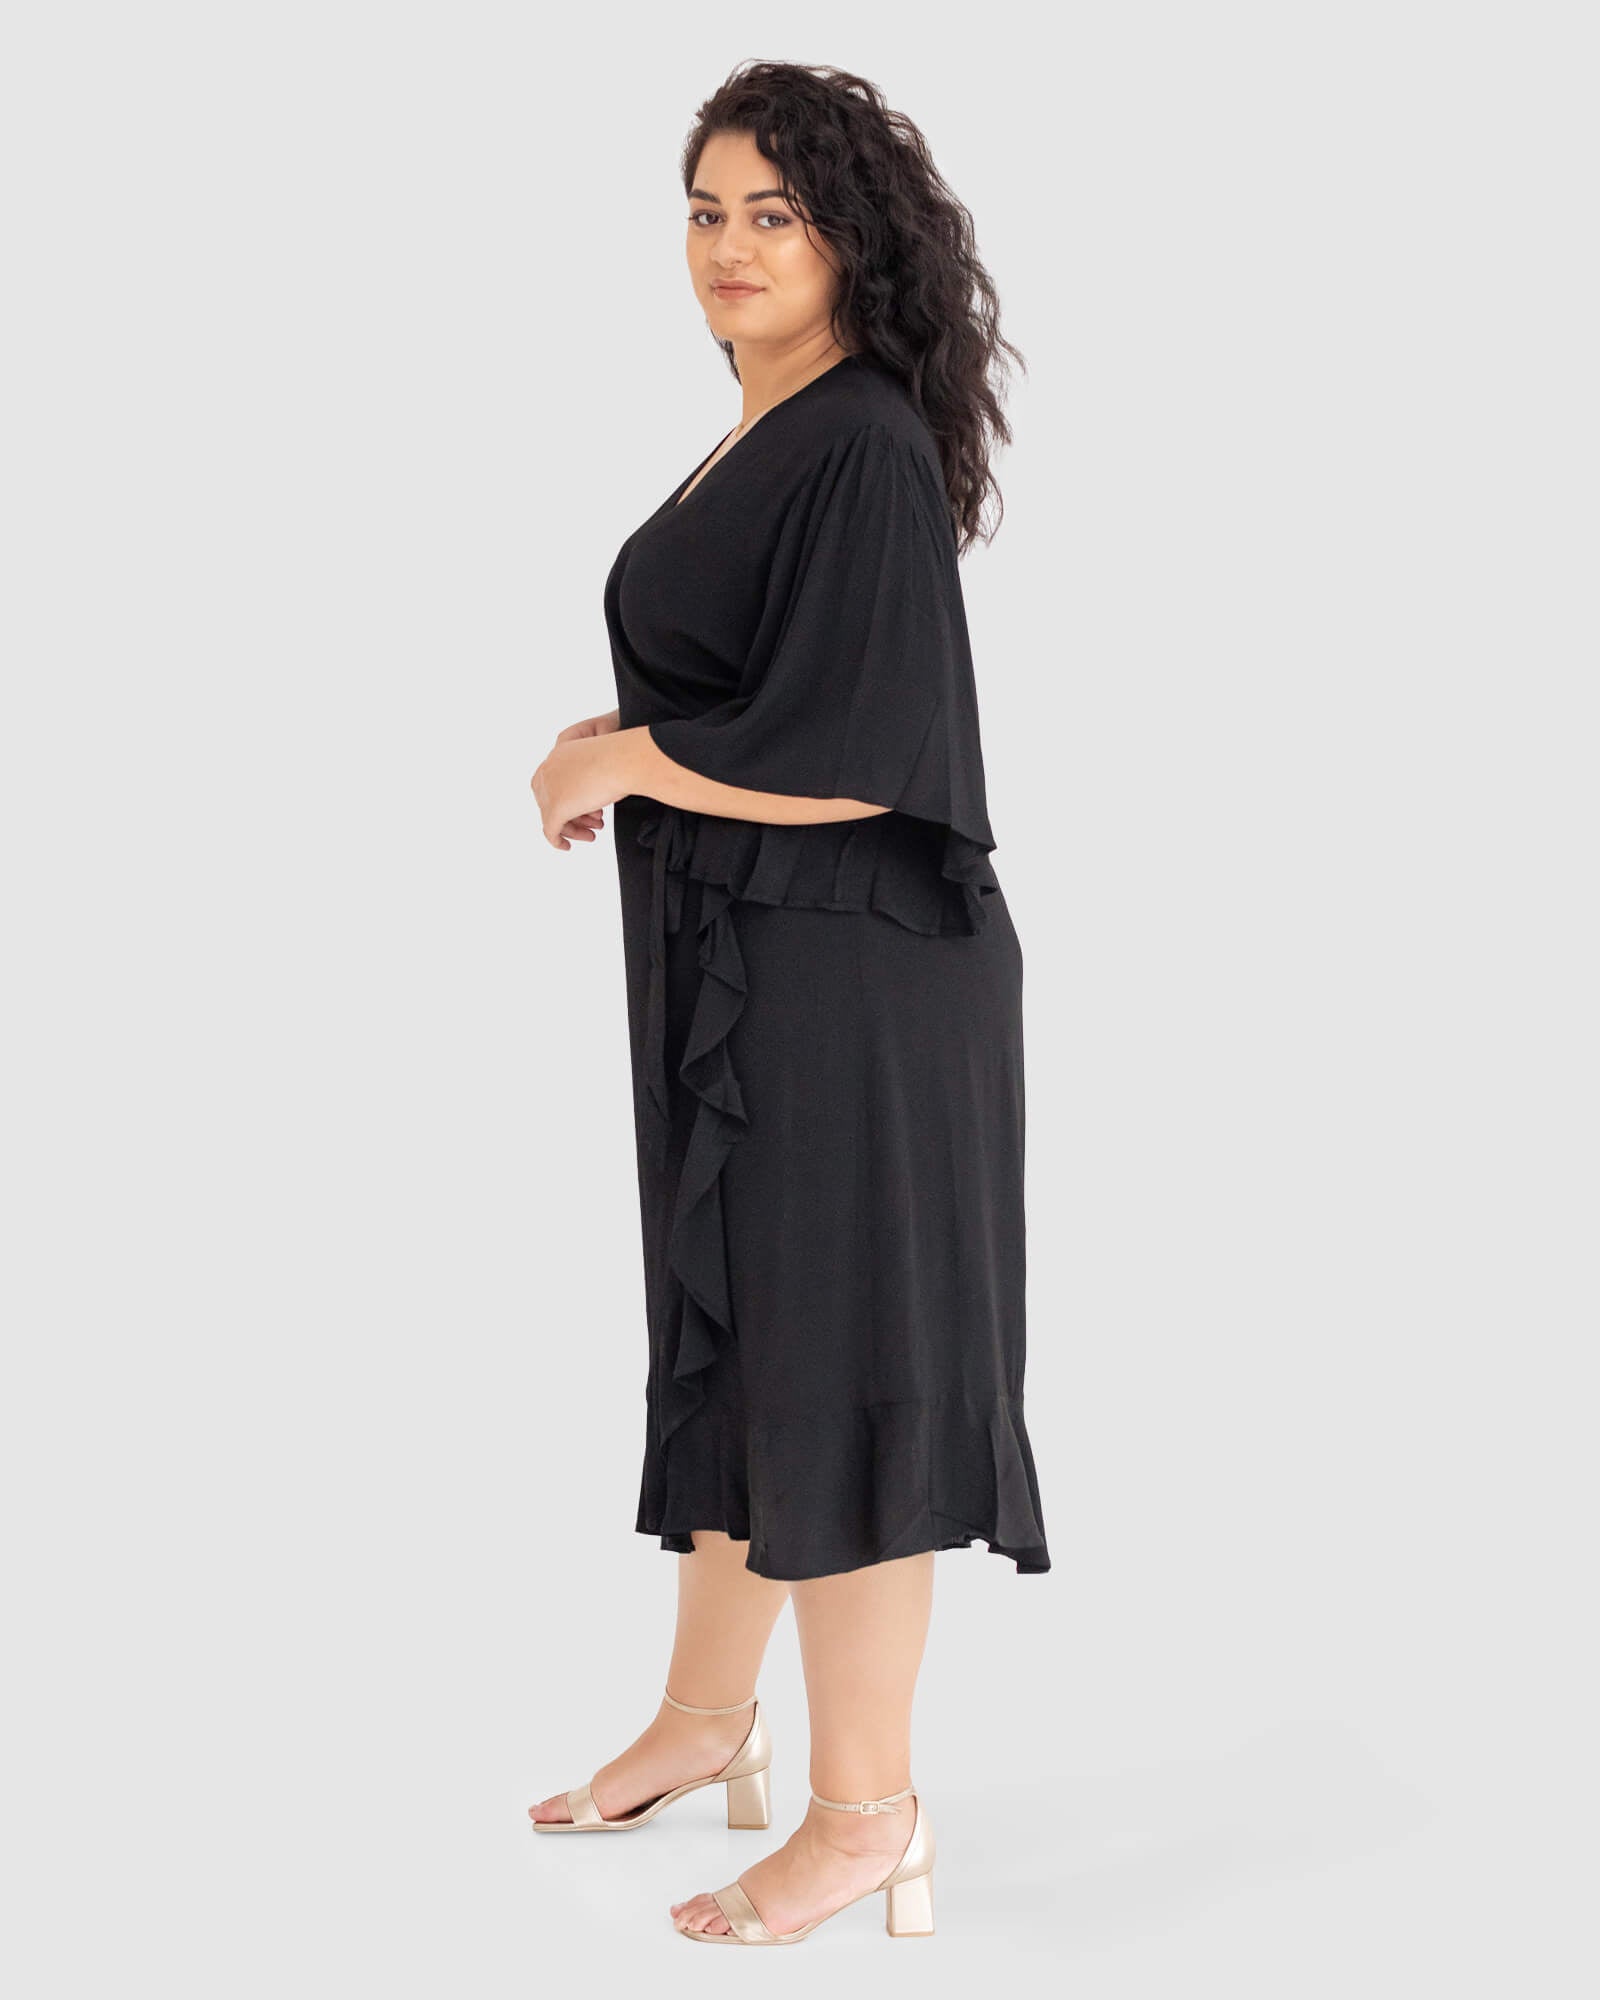 Gabrielle Short Sleeve Wrap Dress in Black - Dani Marie US